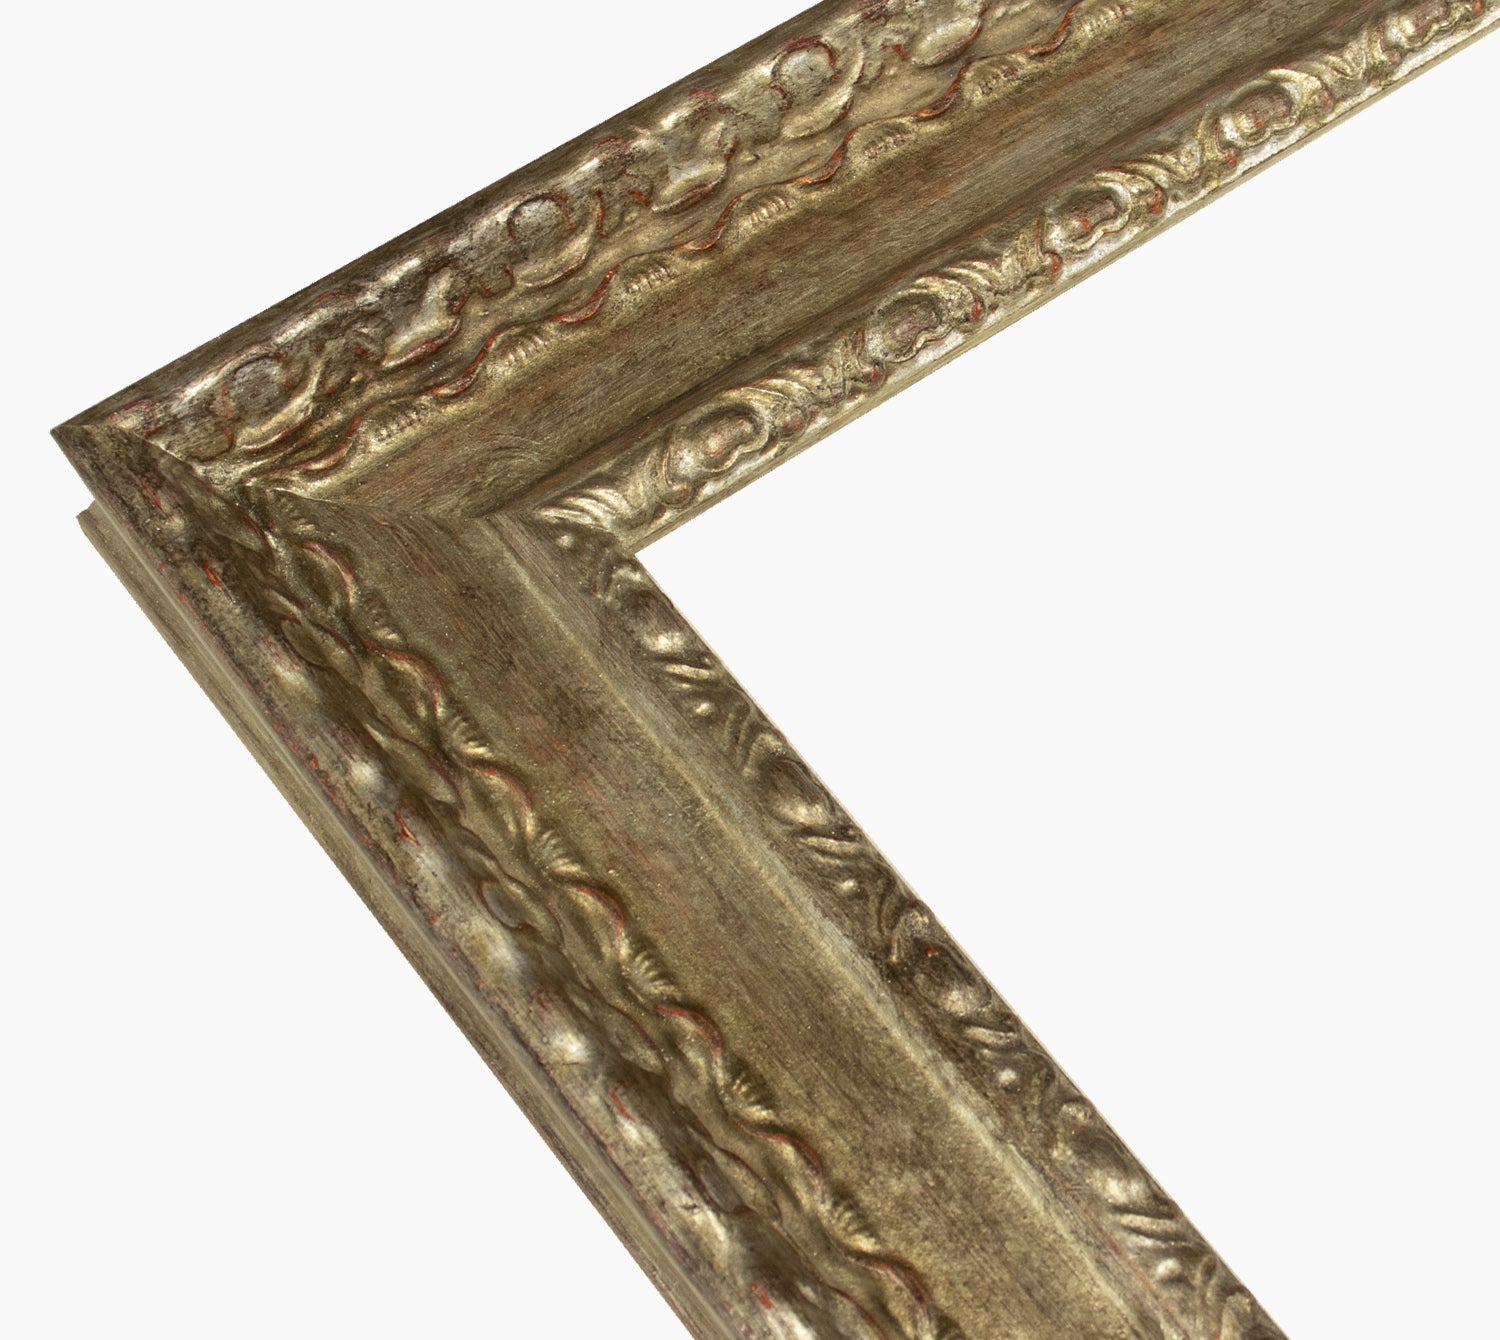 343.231 cadre en bois à la feuille d'argent antique mesure de profil 60x30 mm Lombarda cornici S.n.c.